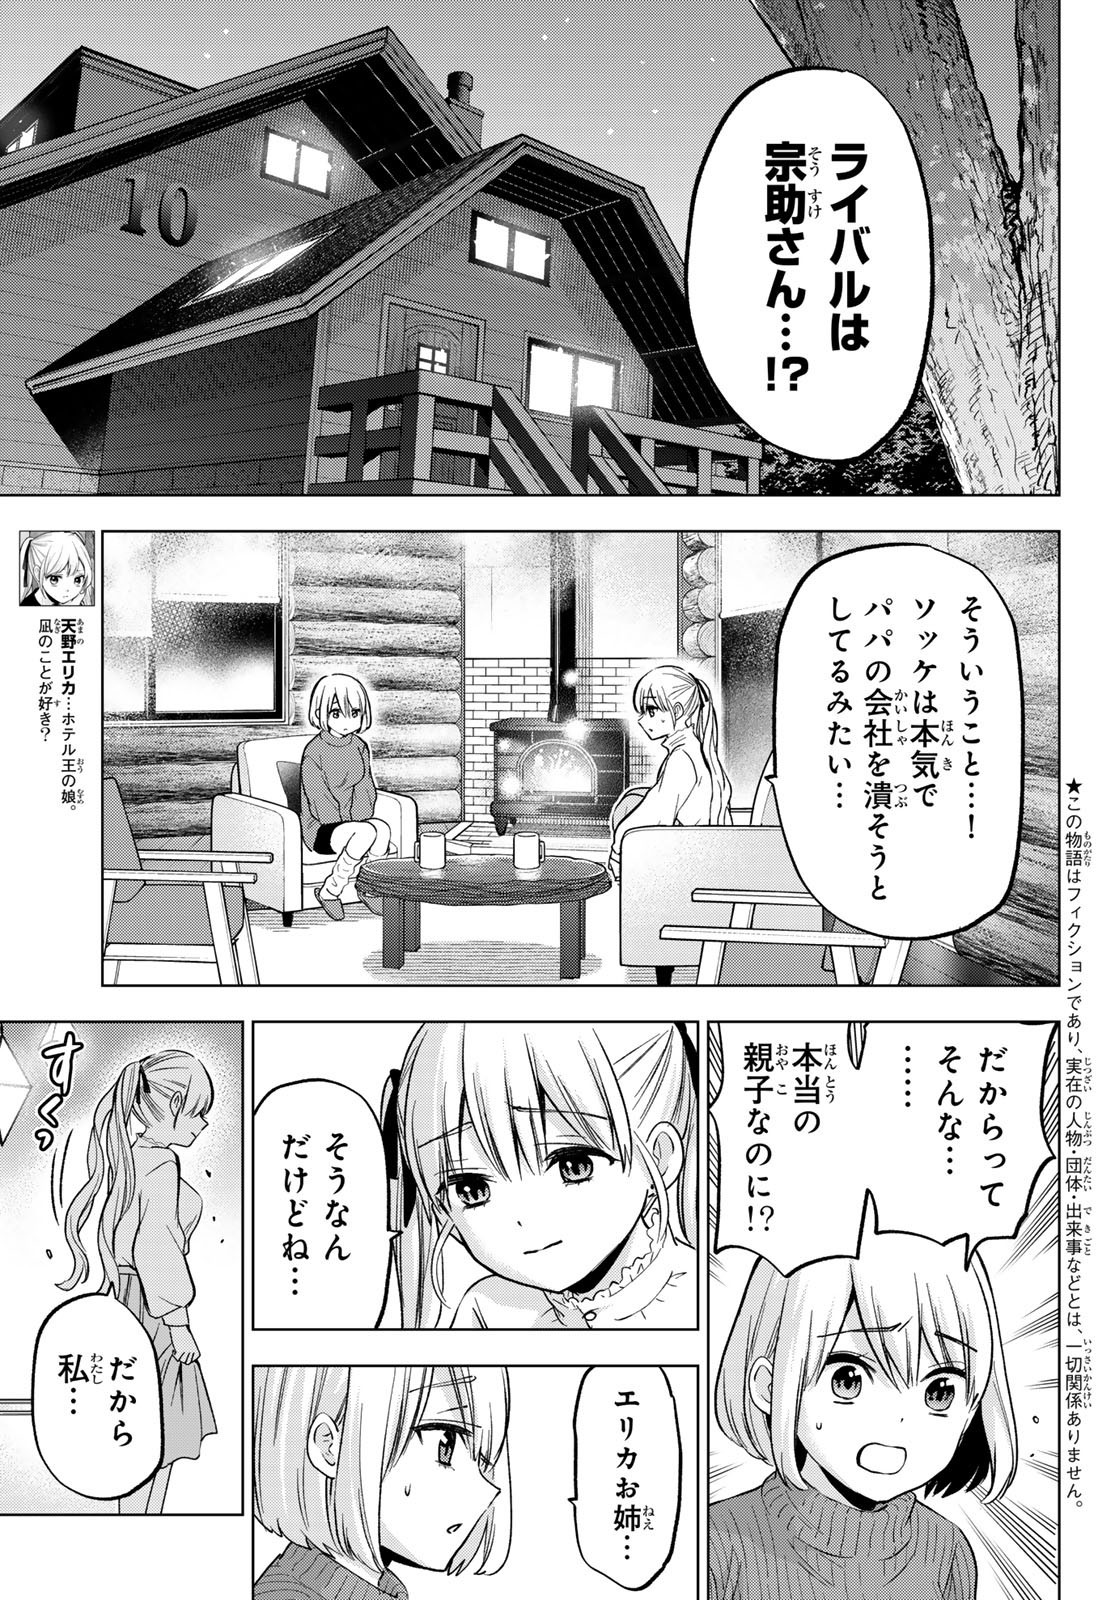 Kakkou no Iinazuke - Chapter 195 - Page 3